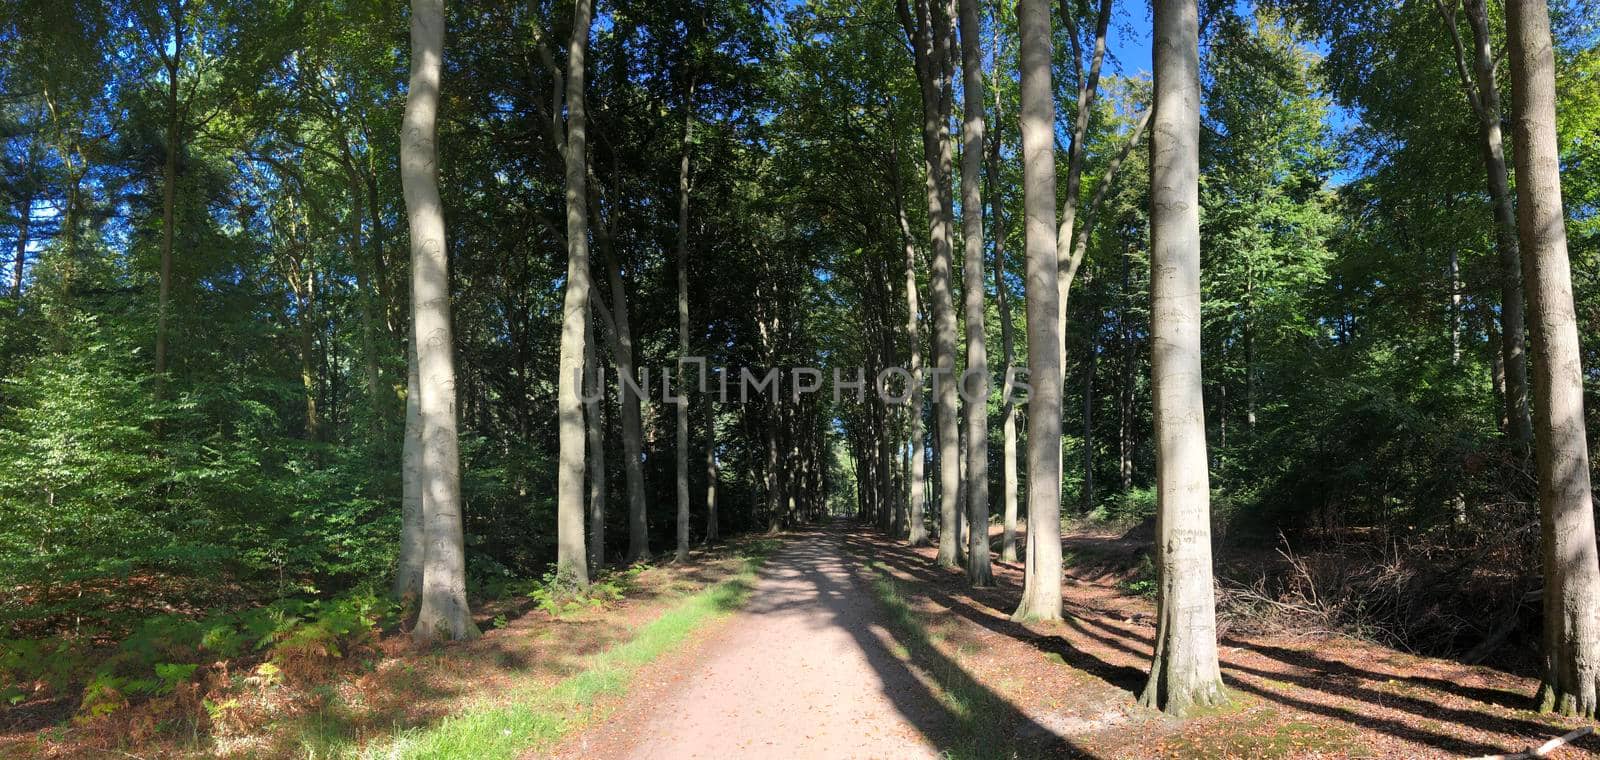 Forest around castle Slangenburg in Gelderland, The Netherlands